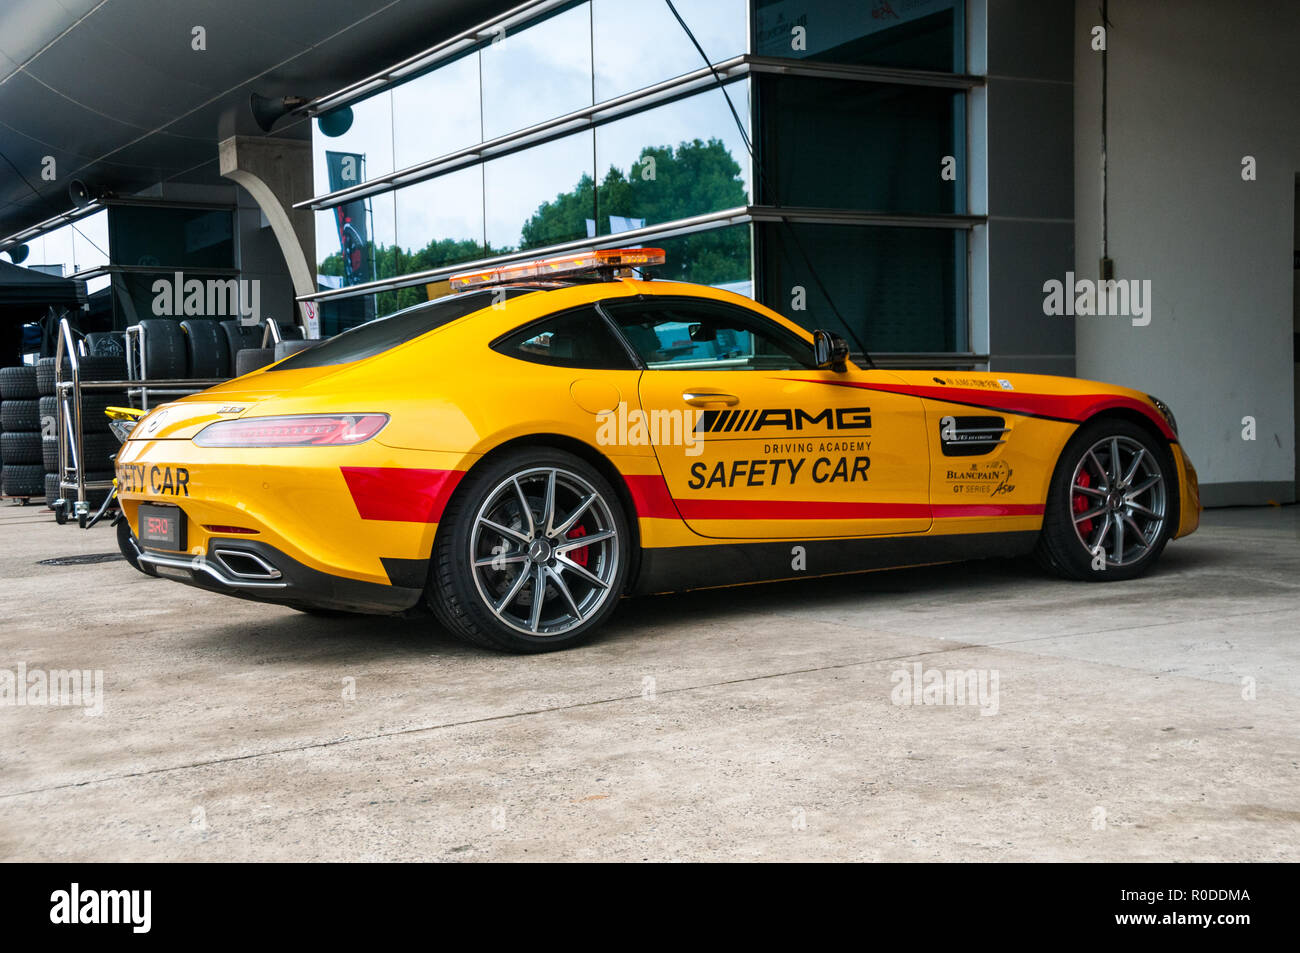 Formel 1: Mercedes SLS AMG GT Safety Car - AUTO BILD